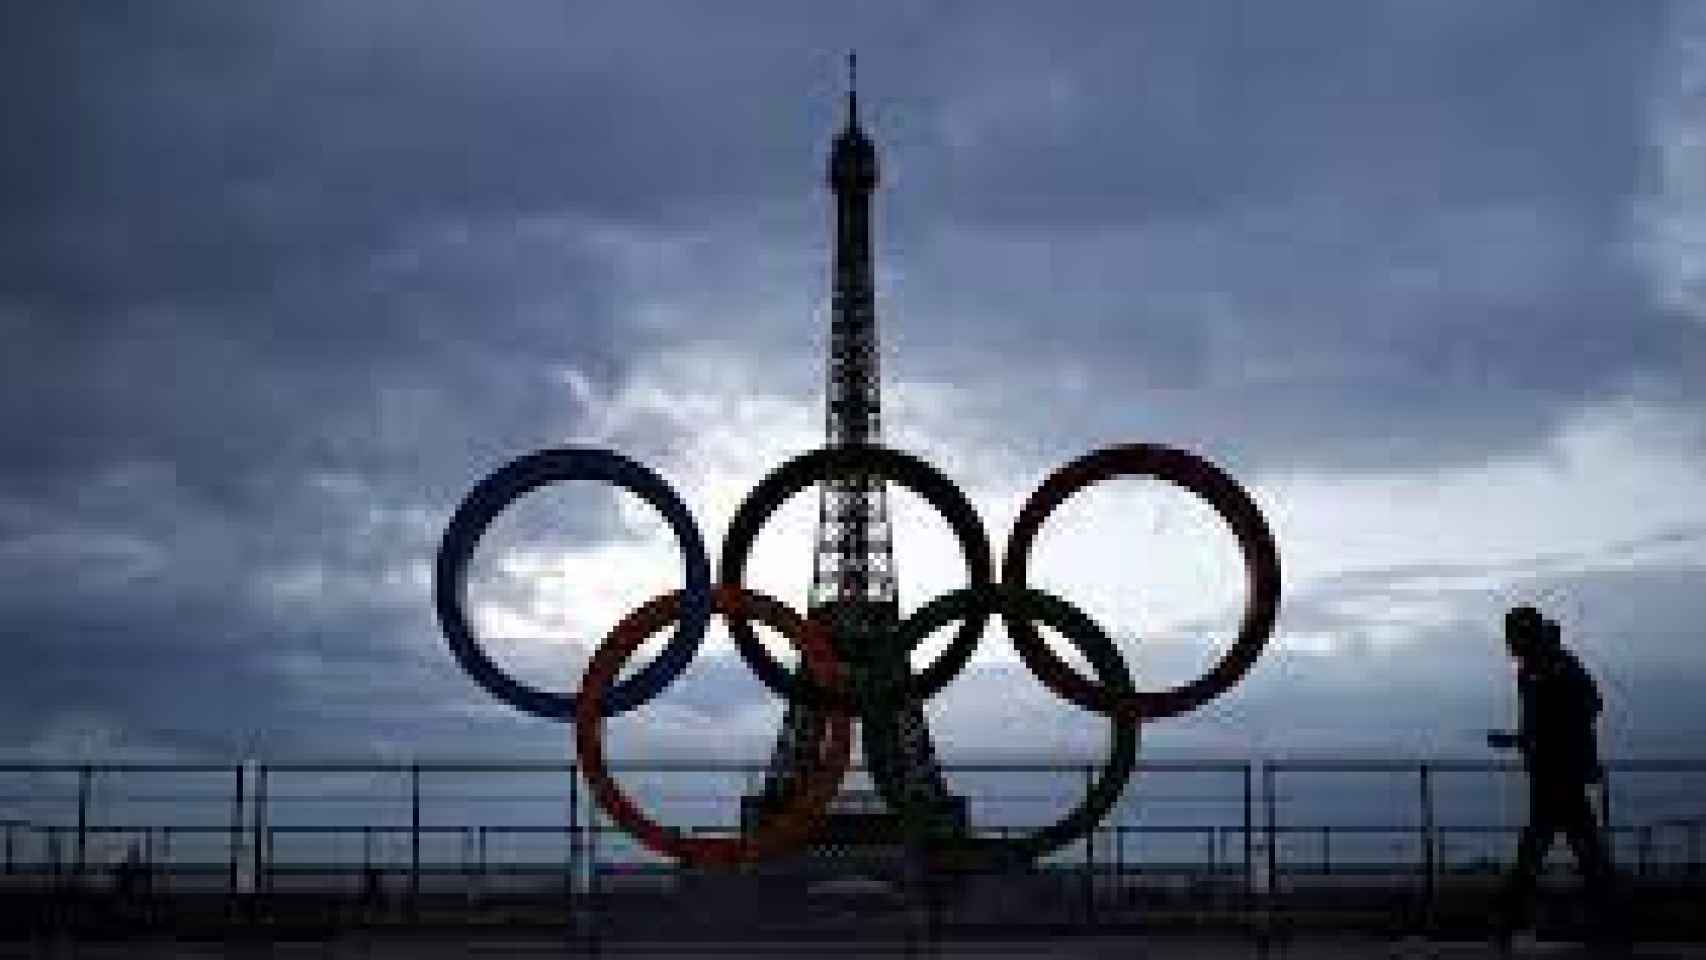 La torre Eiffel de fondo, con los anillos olímpicos.